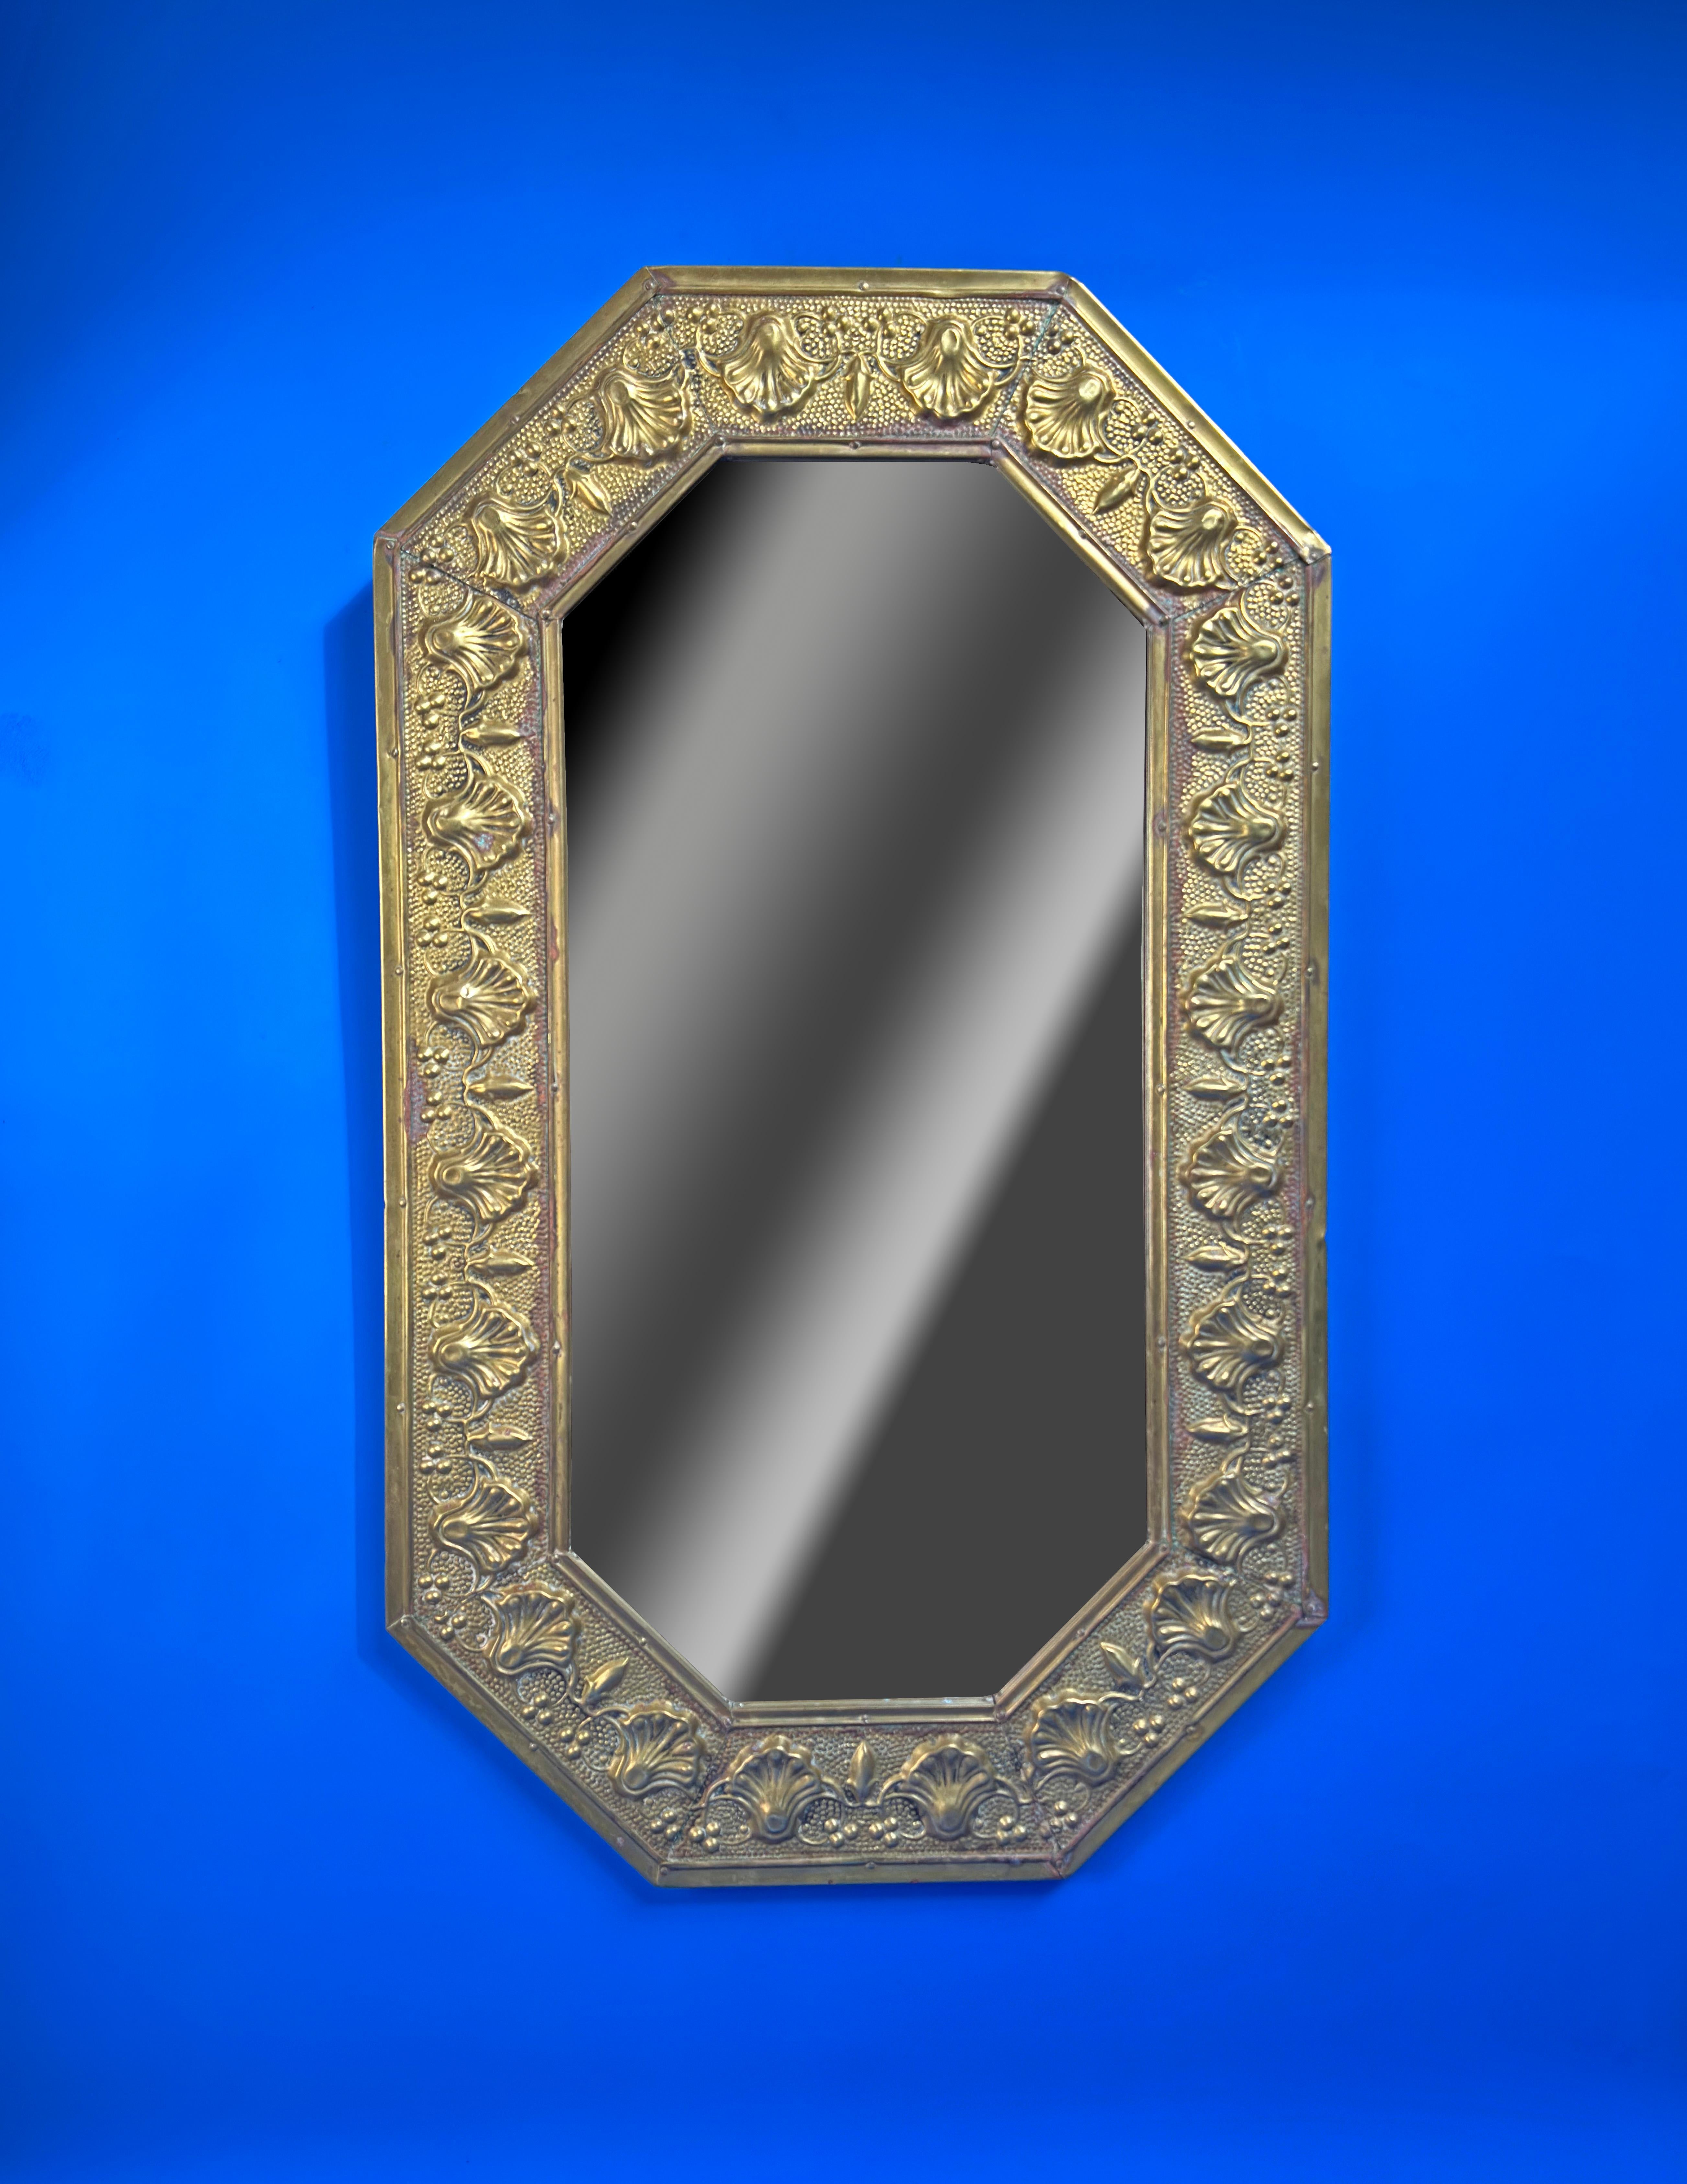 Ein schöner kunsthandwerklicher Spiegel, der in England um die 1920er Jahre hergestellt wurde. 

Der achteckige Spiegel wurde aus Messingblech gefertigt und anschließend mit der Repoussiertechnik gehämmert, um den dekorativen Rahmenrand zu schaffen.